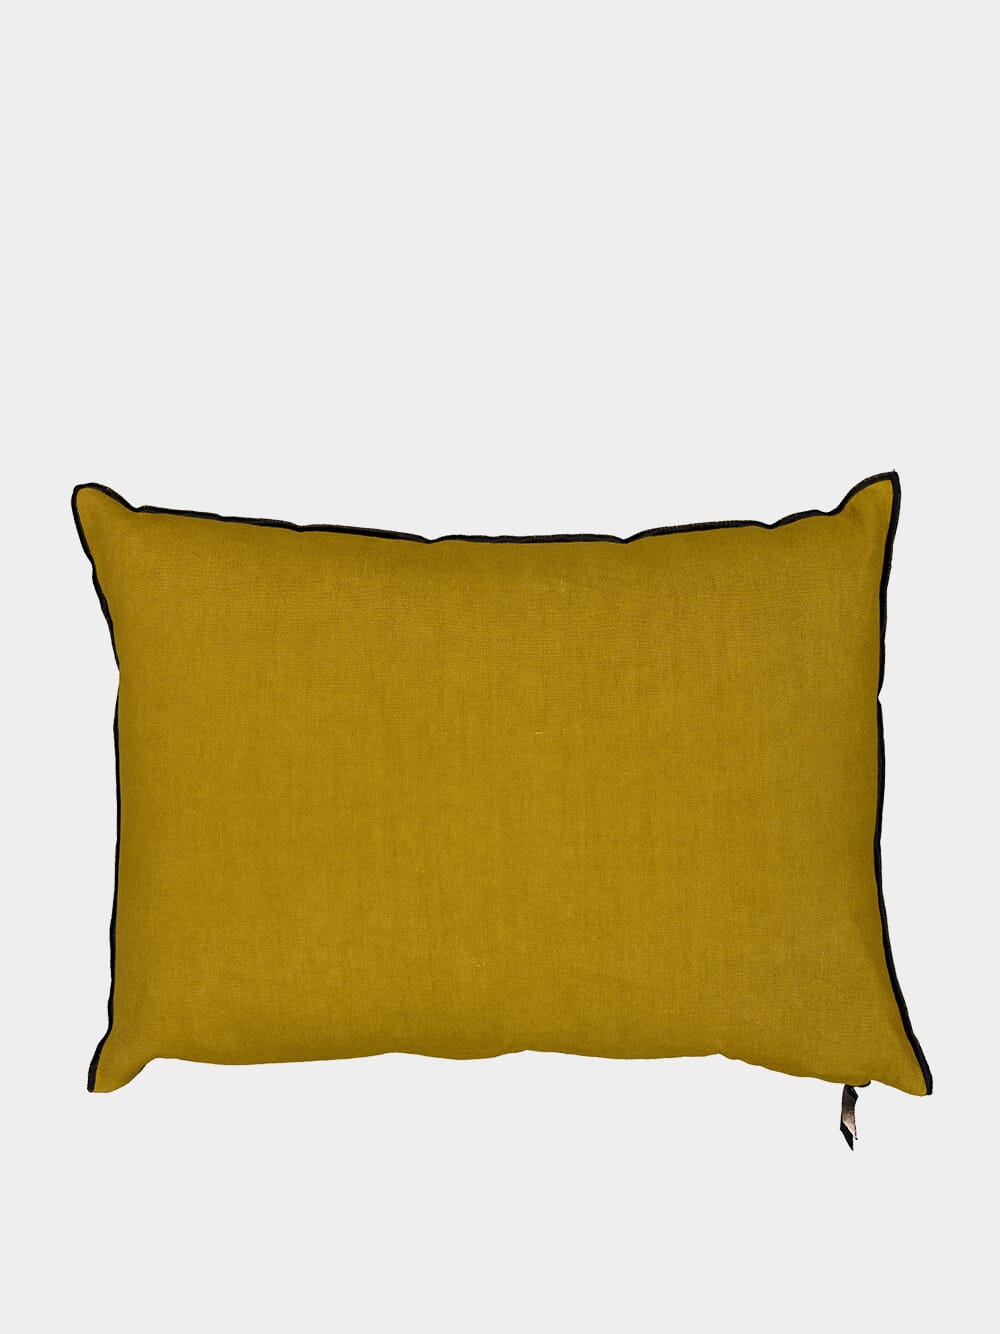 Vice Versa Washed Linen Mustard Cushion